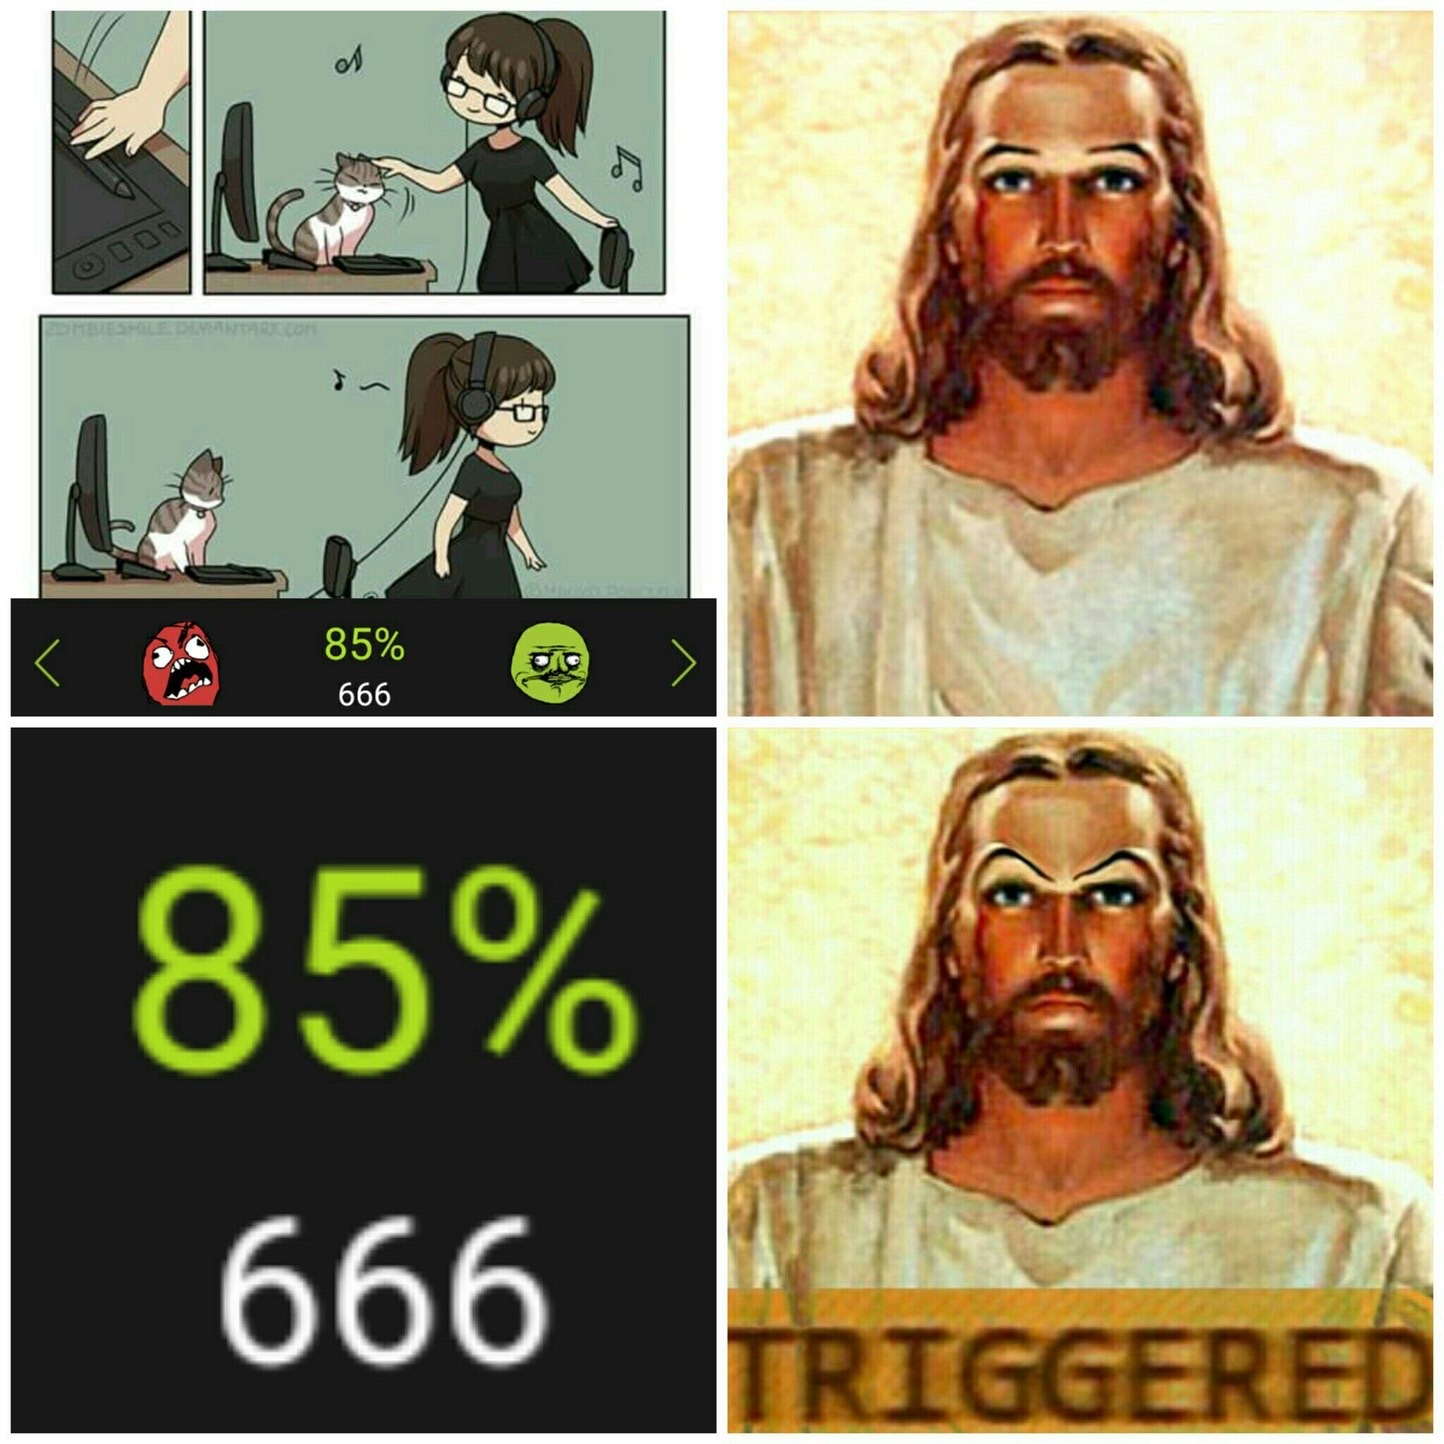 Jesus is not pleased - meme